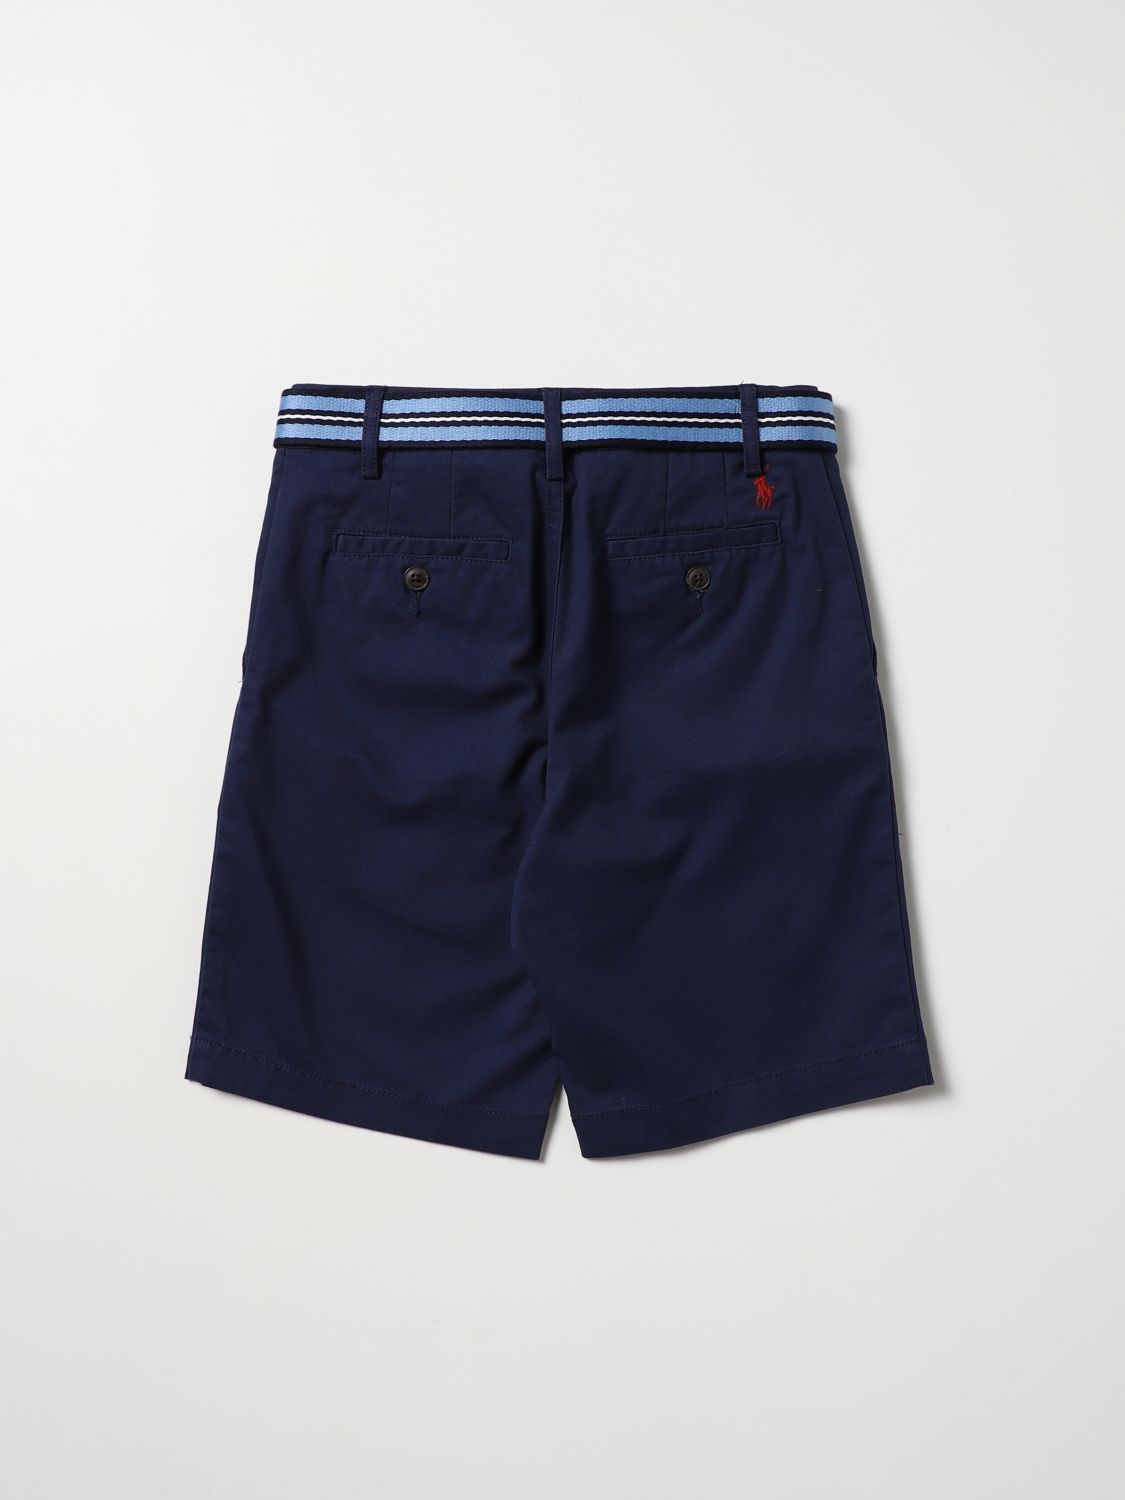 Pantaloncino Polo Ralph Lauren: Pantaloncino Polo Ralph Lauren bambino blue navy 2